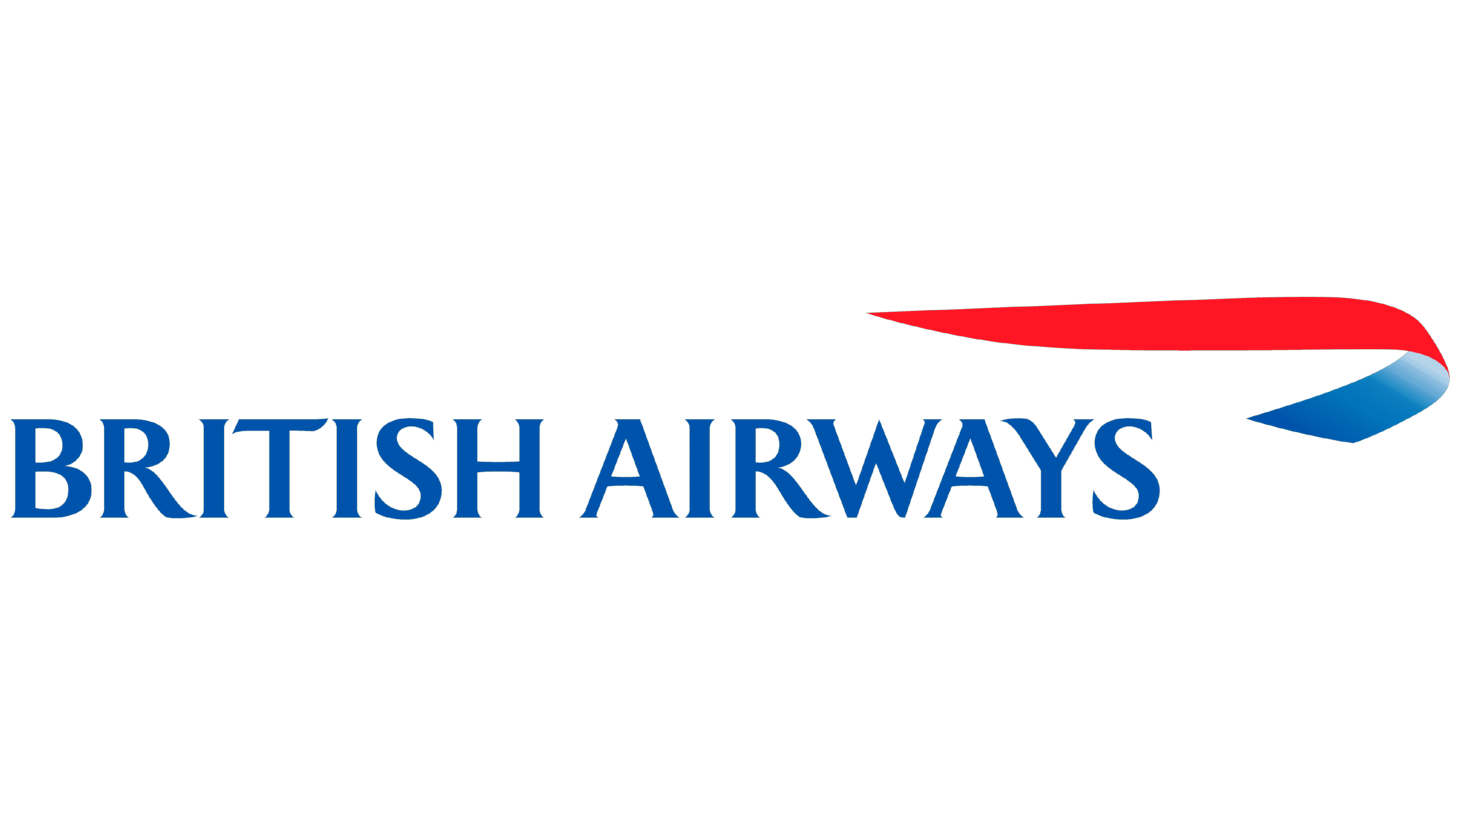 British airways sign